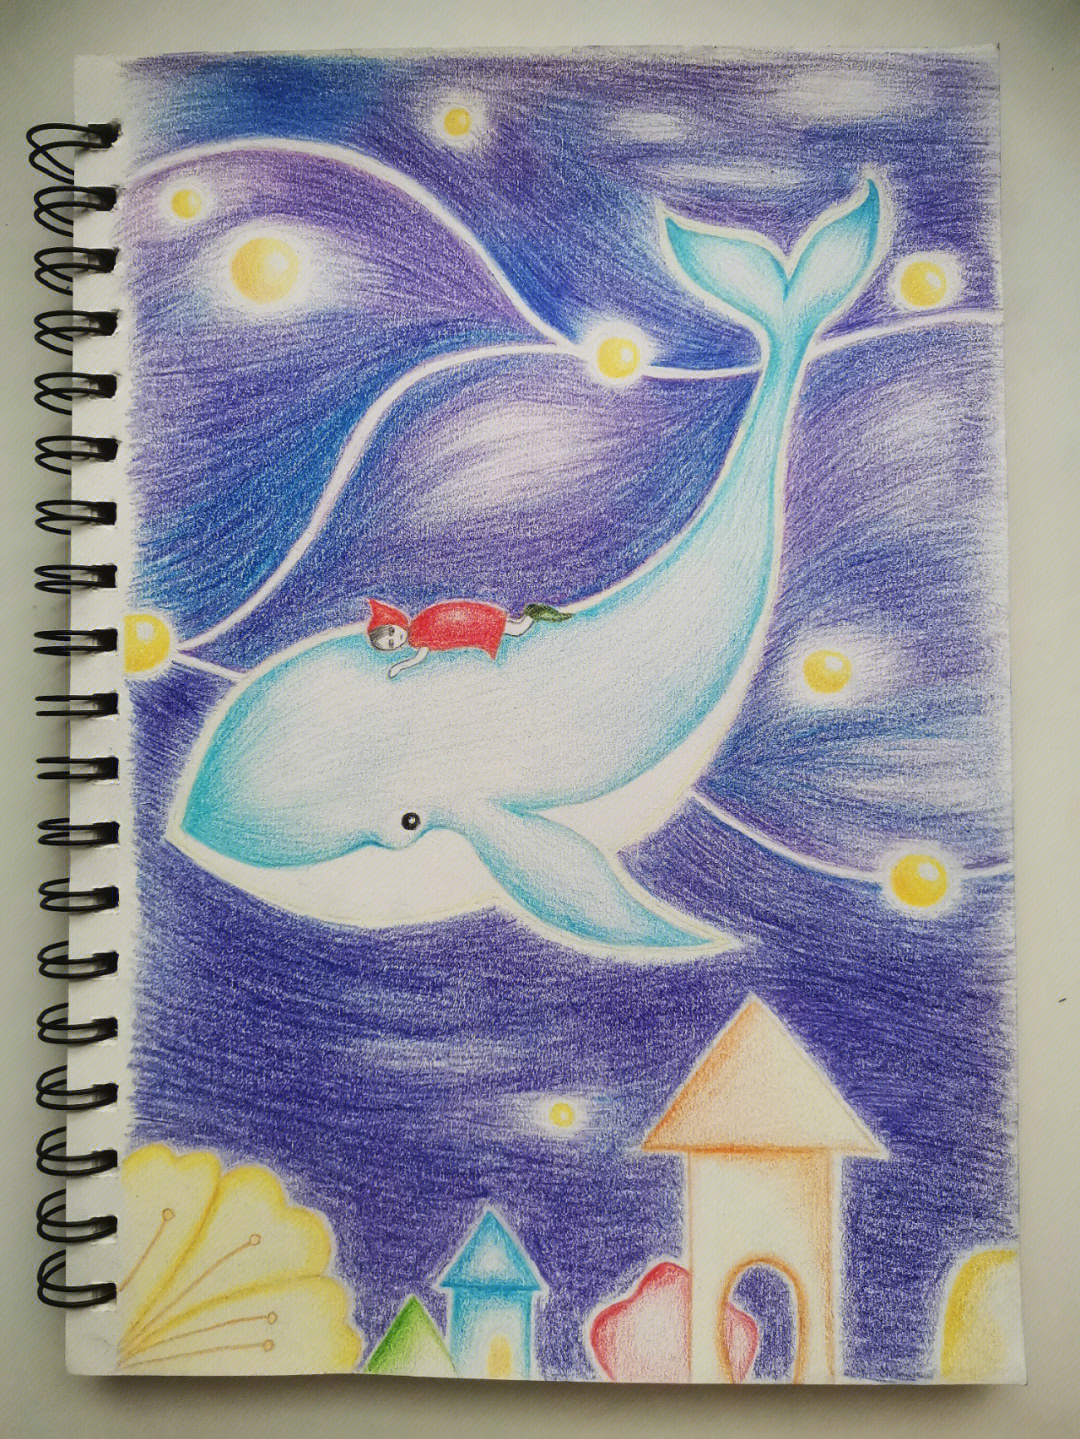 彩铅画鲸鱼 梦幻图片